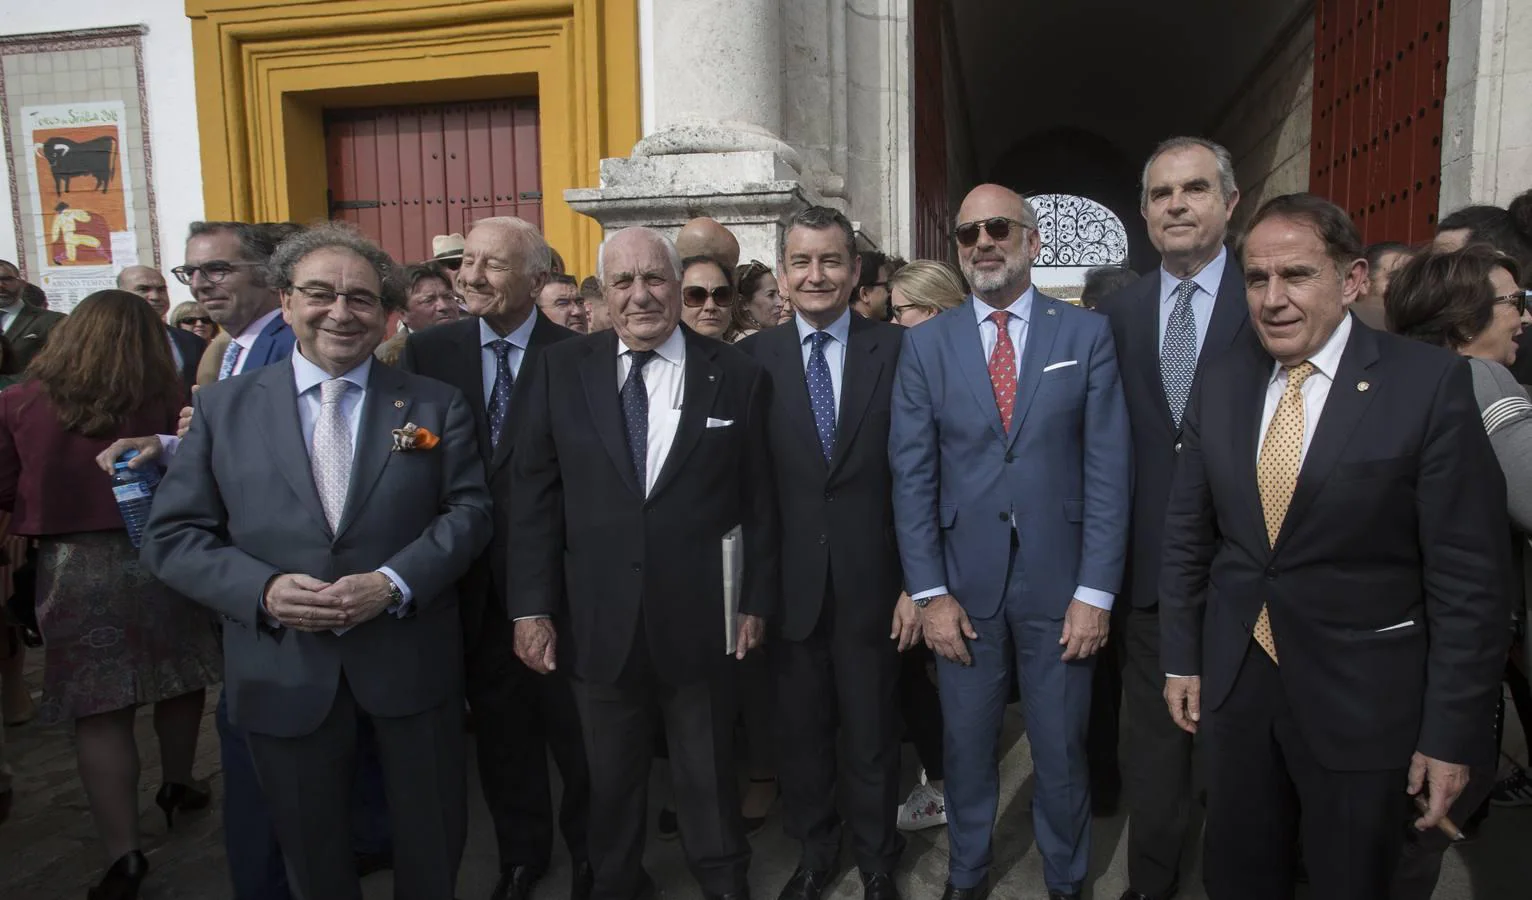 José Antonio Fernández Cabrero, Enrique Carmona, Antonio Sanz, Ricardo GIl Toresano, Manuel Contreras y Antonio Pascual